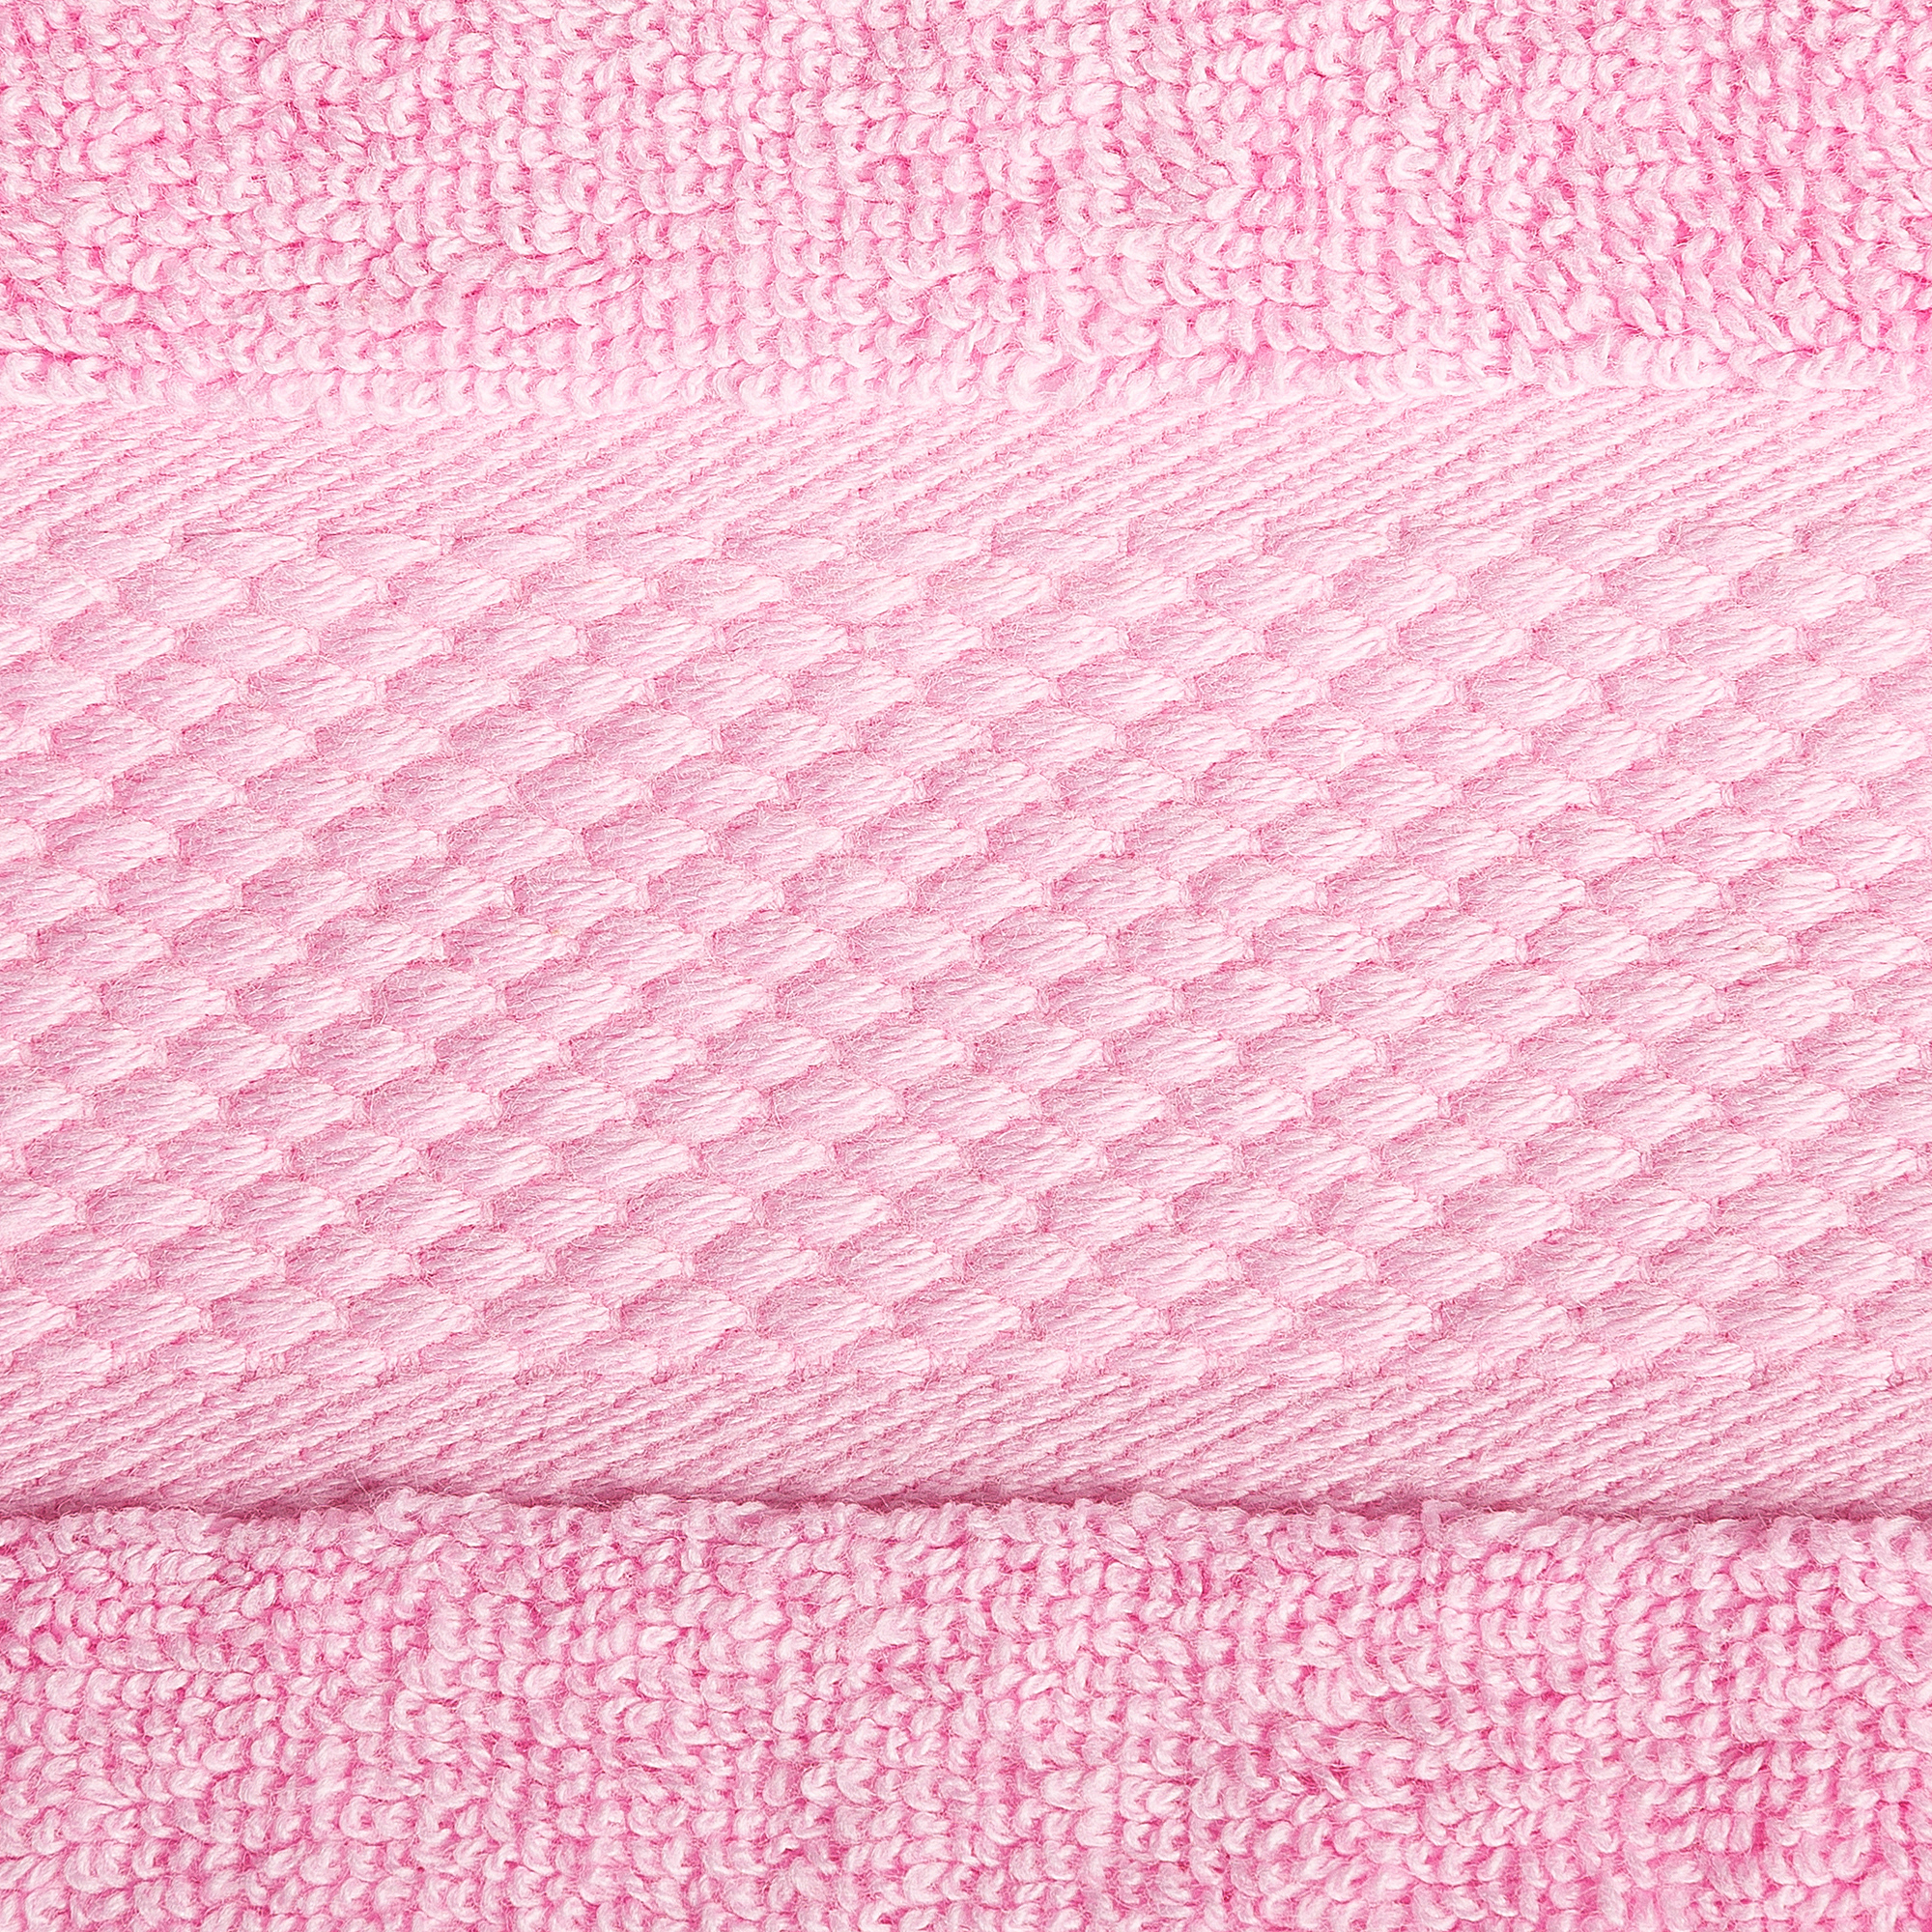 8pcs 700gsm Signature Range Blush Pink Plain 8 Pieces Bale Set Towel